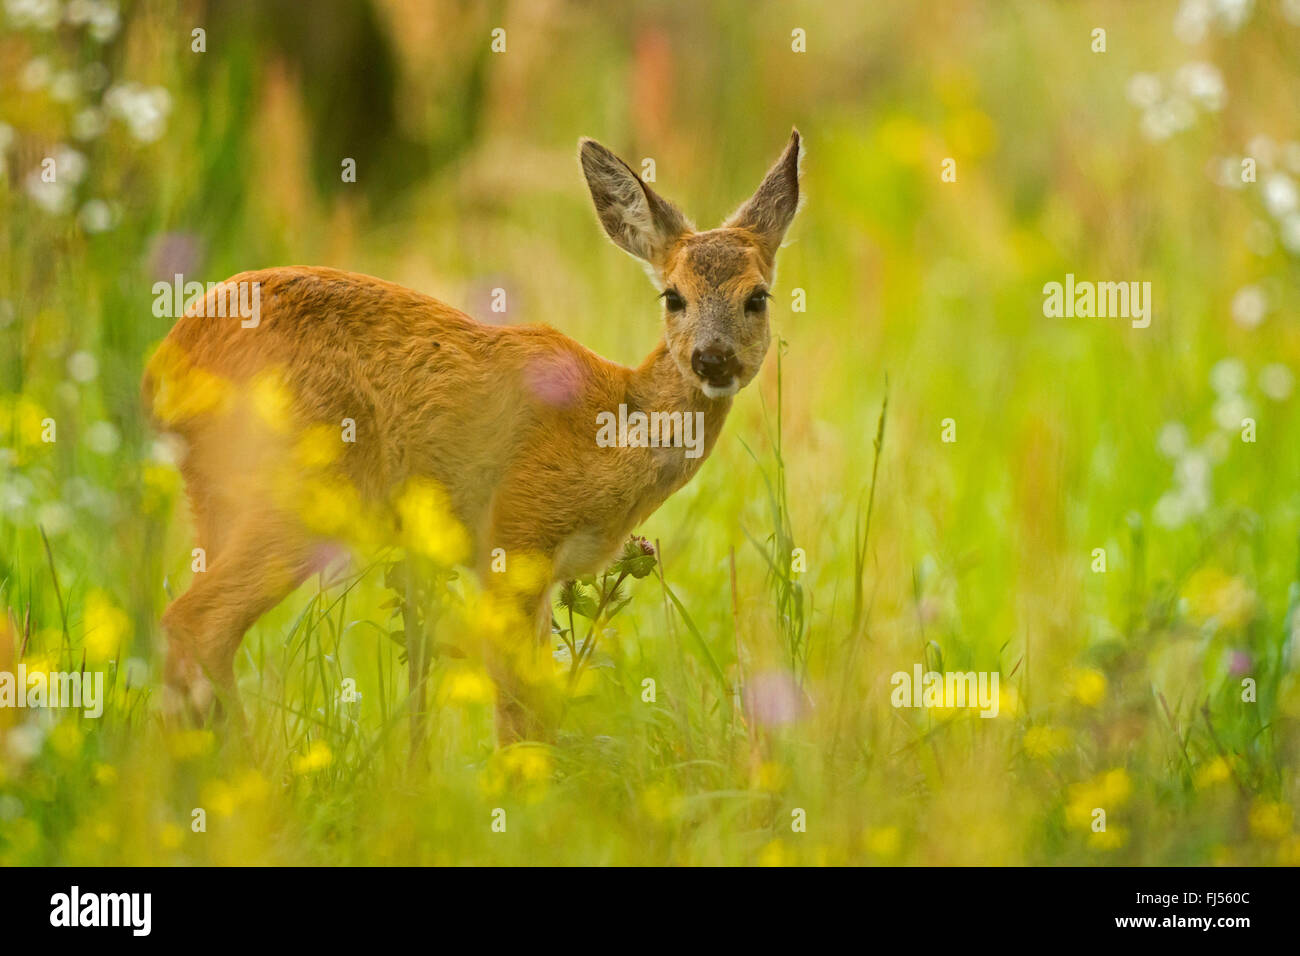 roe deer (Capreolus capreolus), fawn standing in flower meadow, Germany, Brandenburg Stock Photo